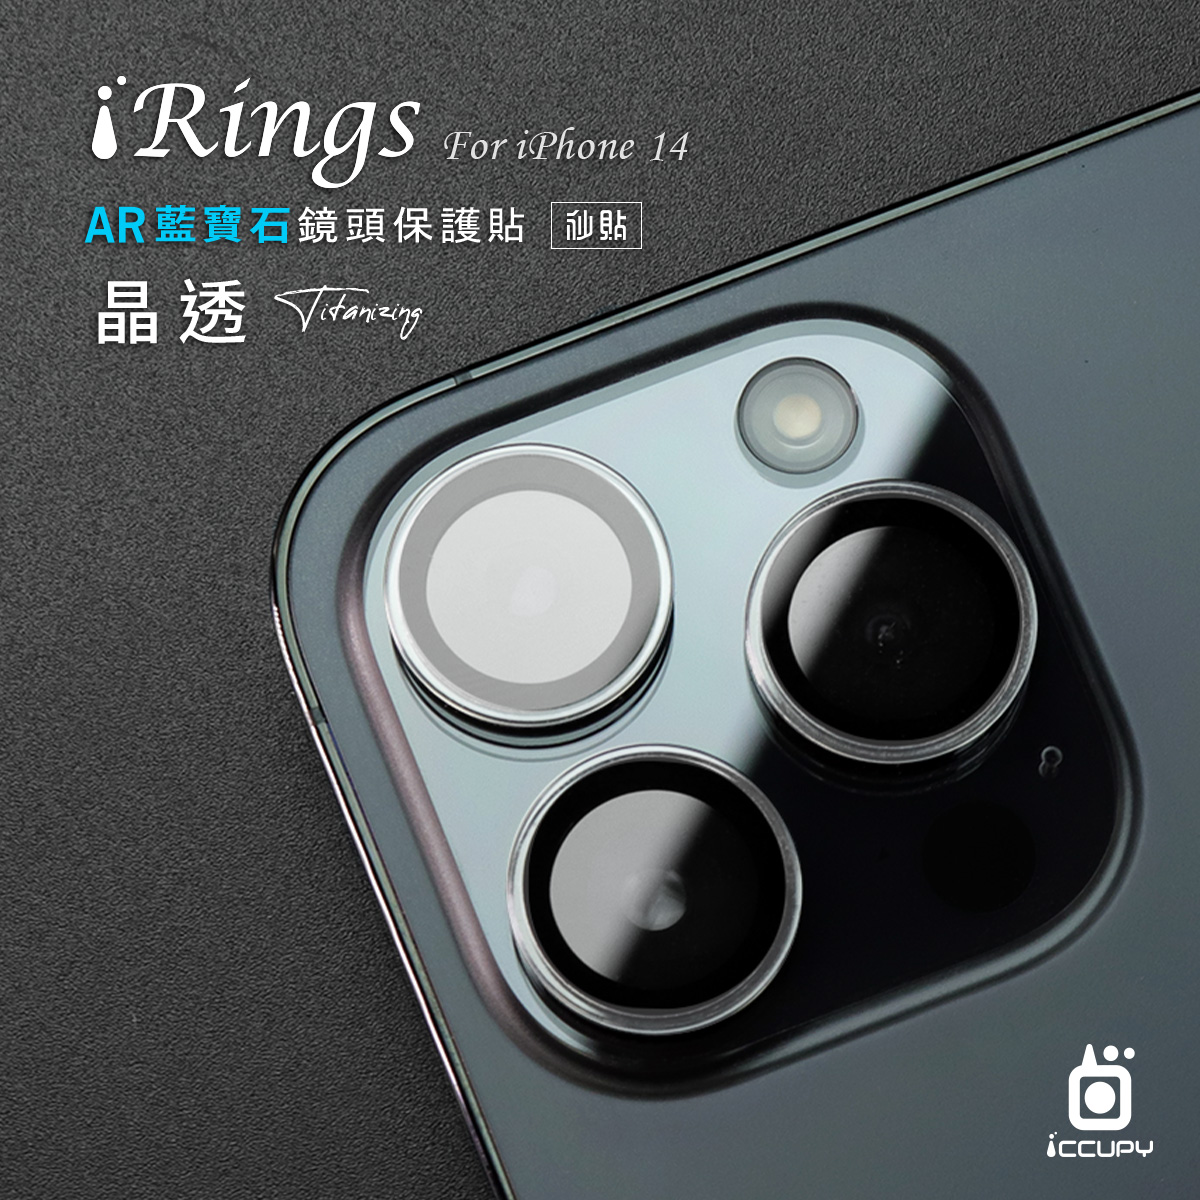 iRings AR藍寶石鏡頭保護貼-晶透 FOR iPhone 14 Pro